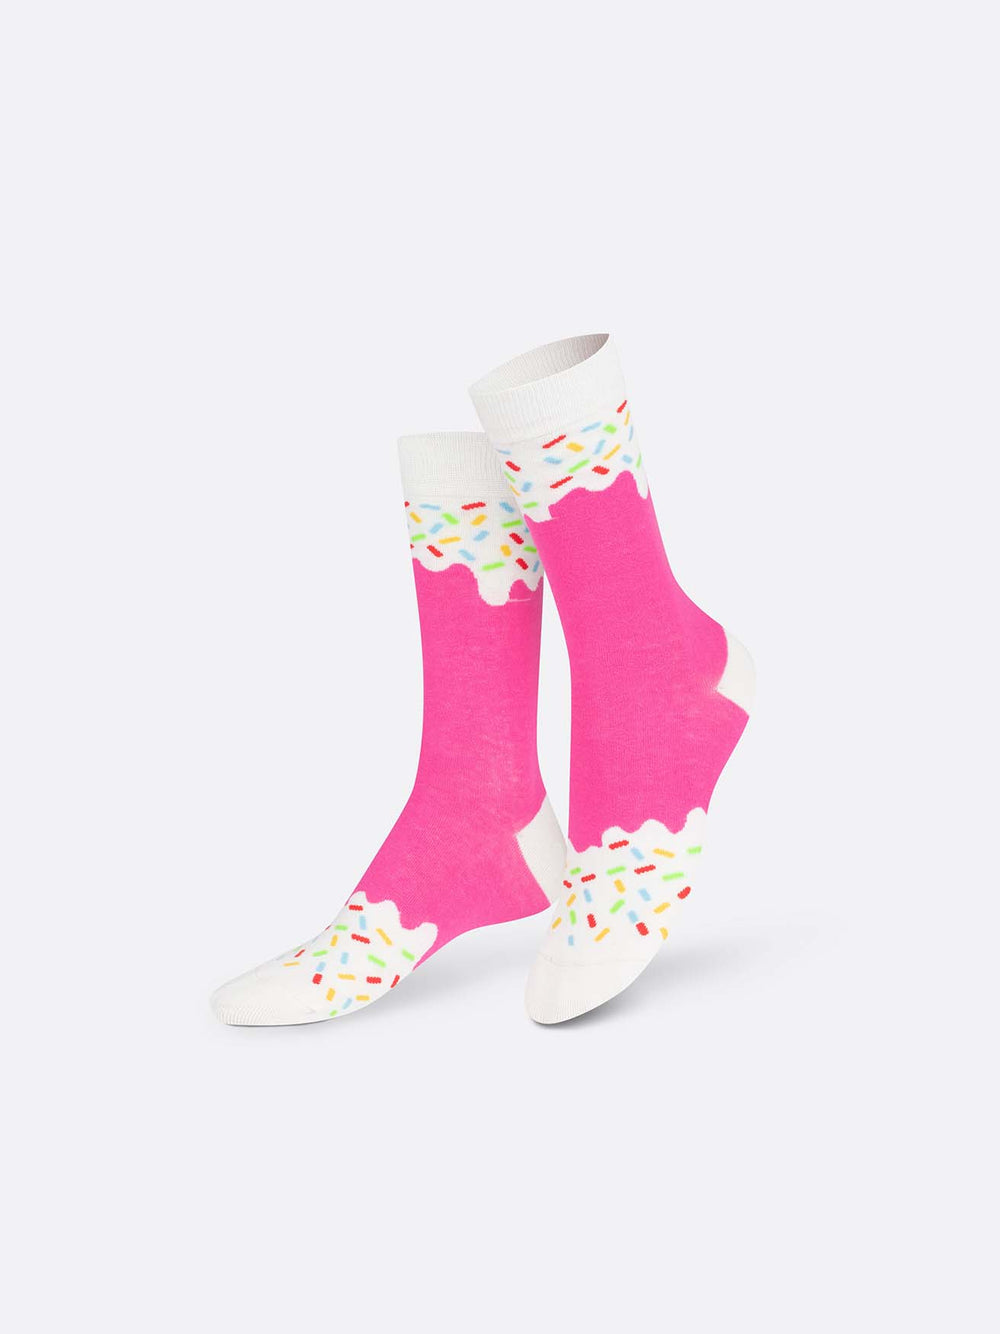 Strawberry Frozen Pop Socks - #Perch#